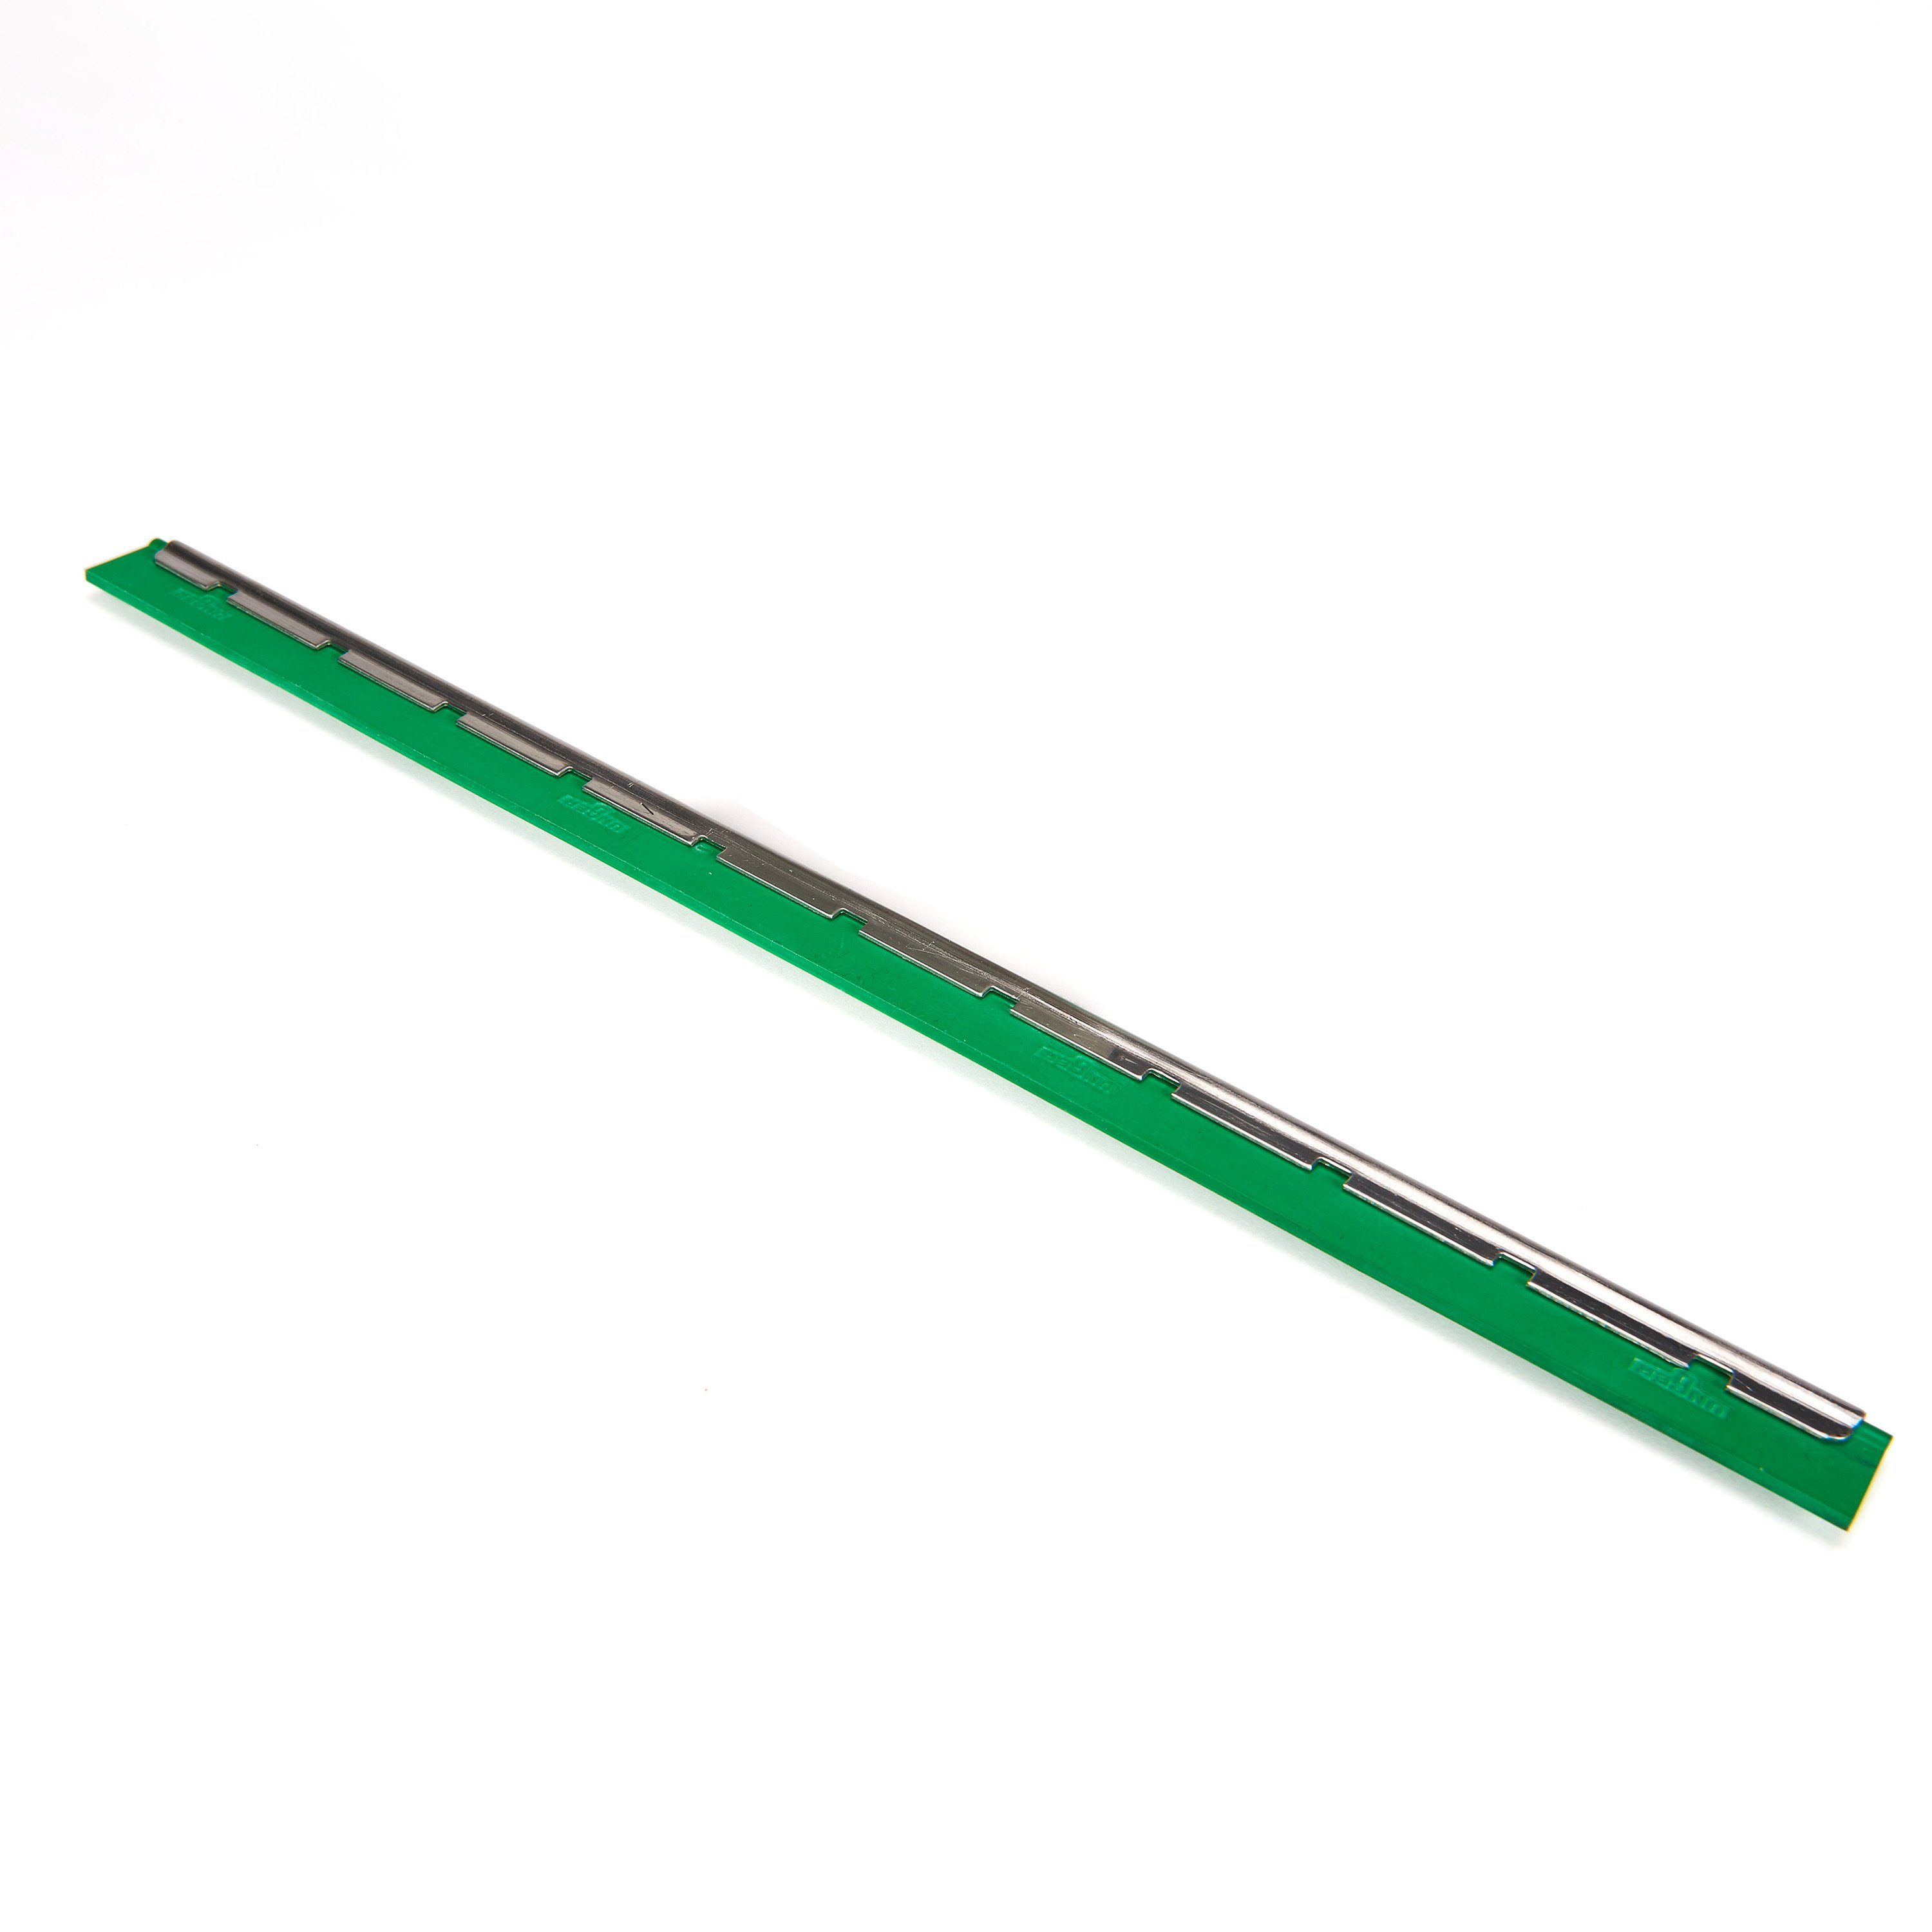 Unger Wasserabzieher S-Schiene Breite 35 cm, mit grünen Wischergummi